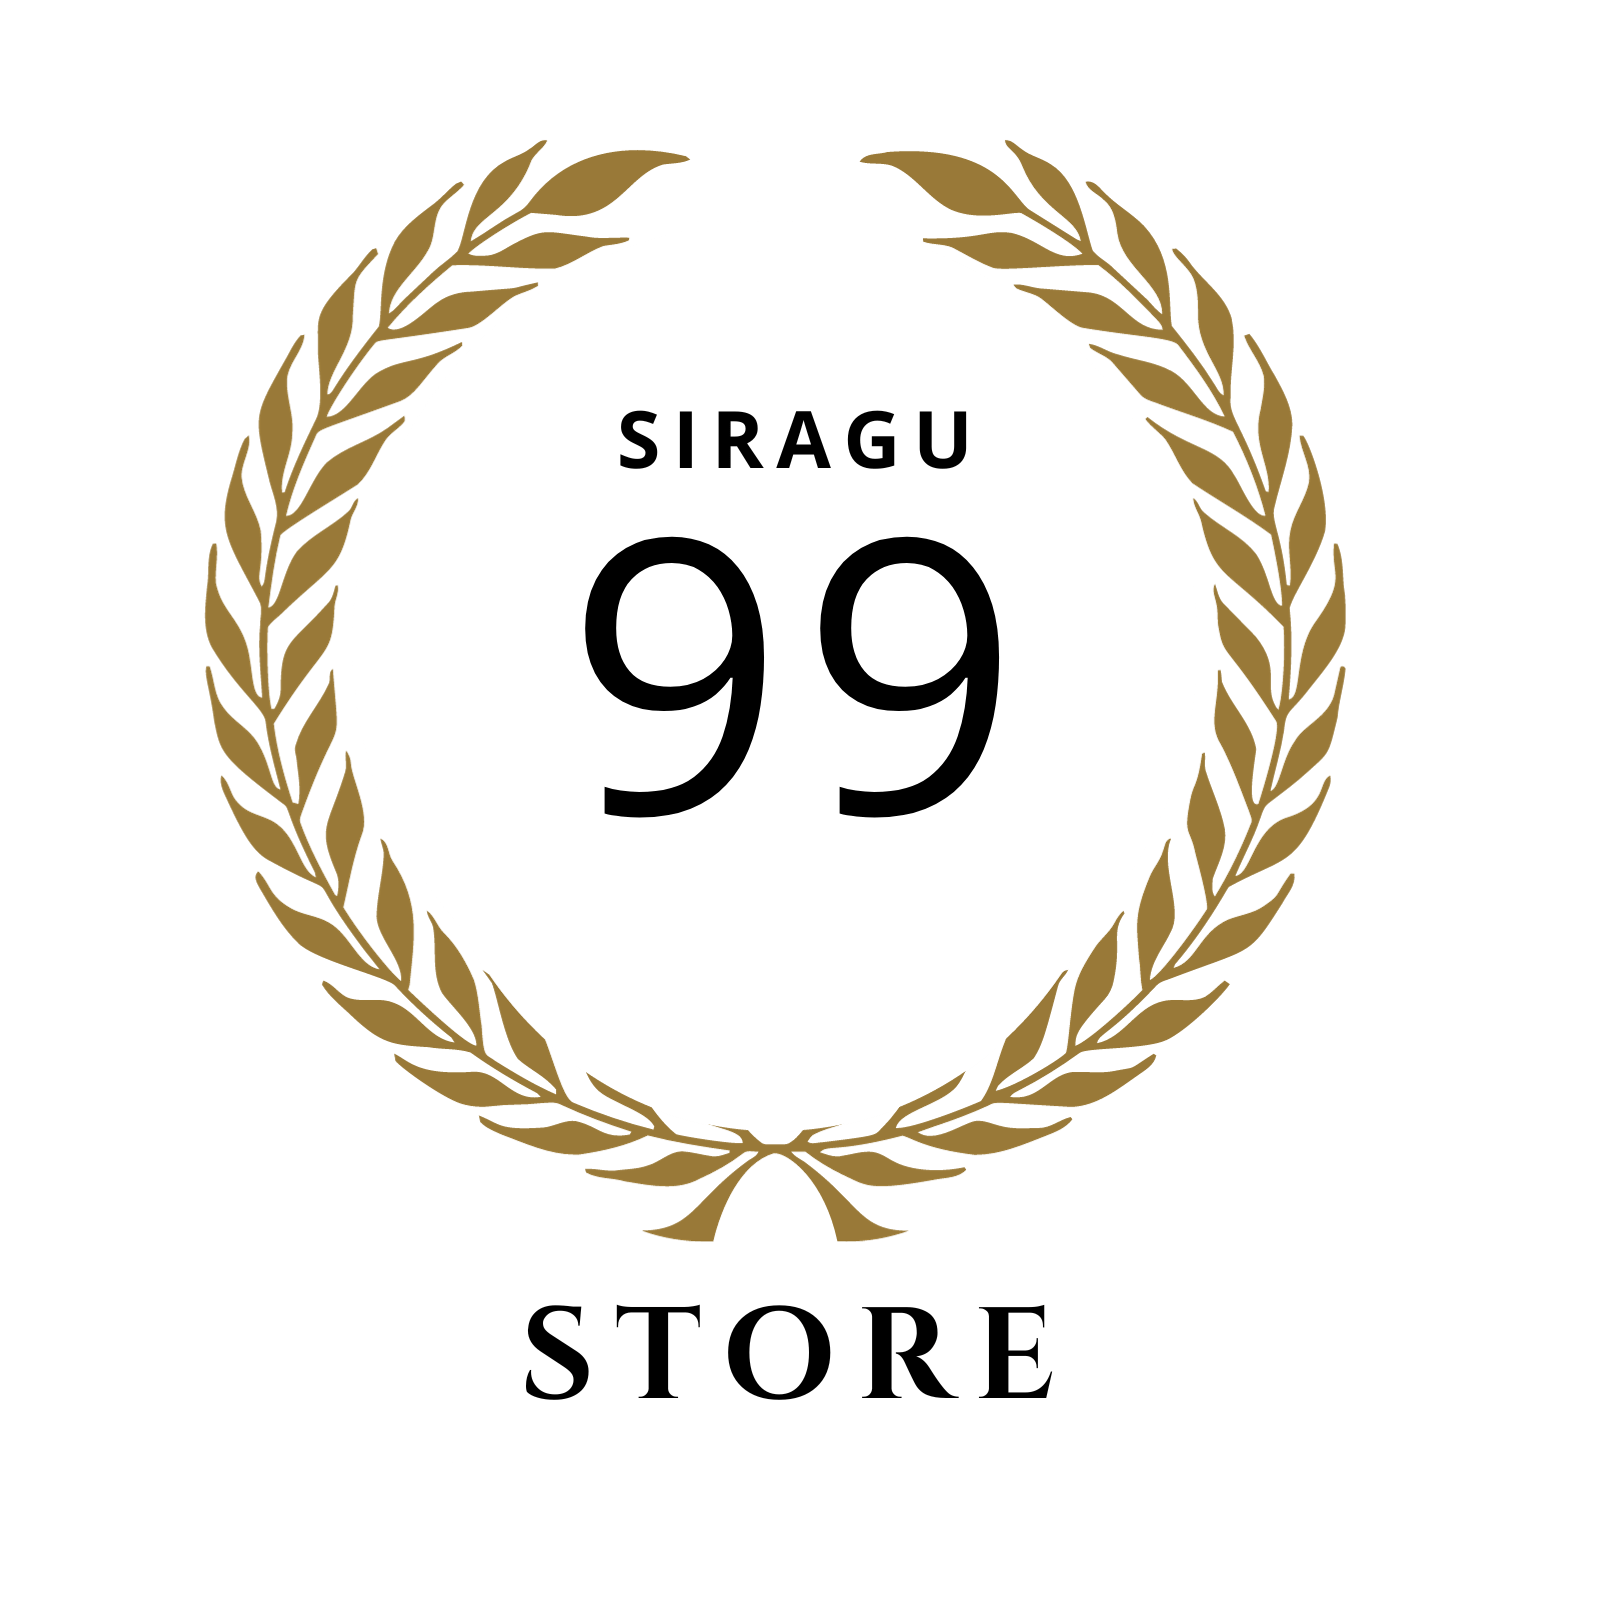 siragu 99 store